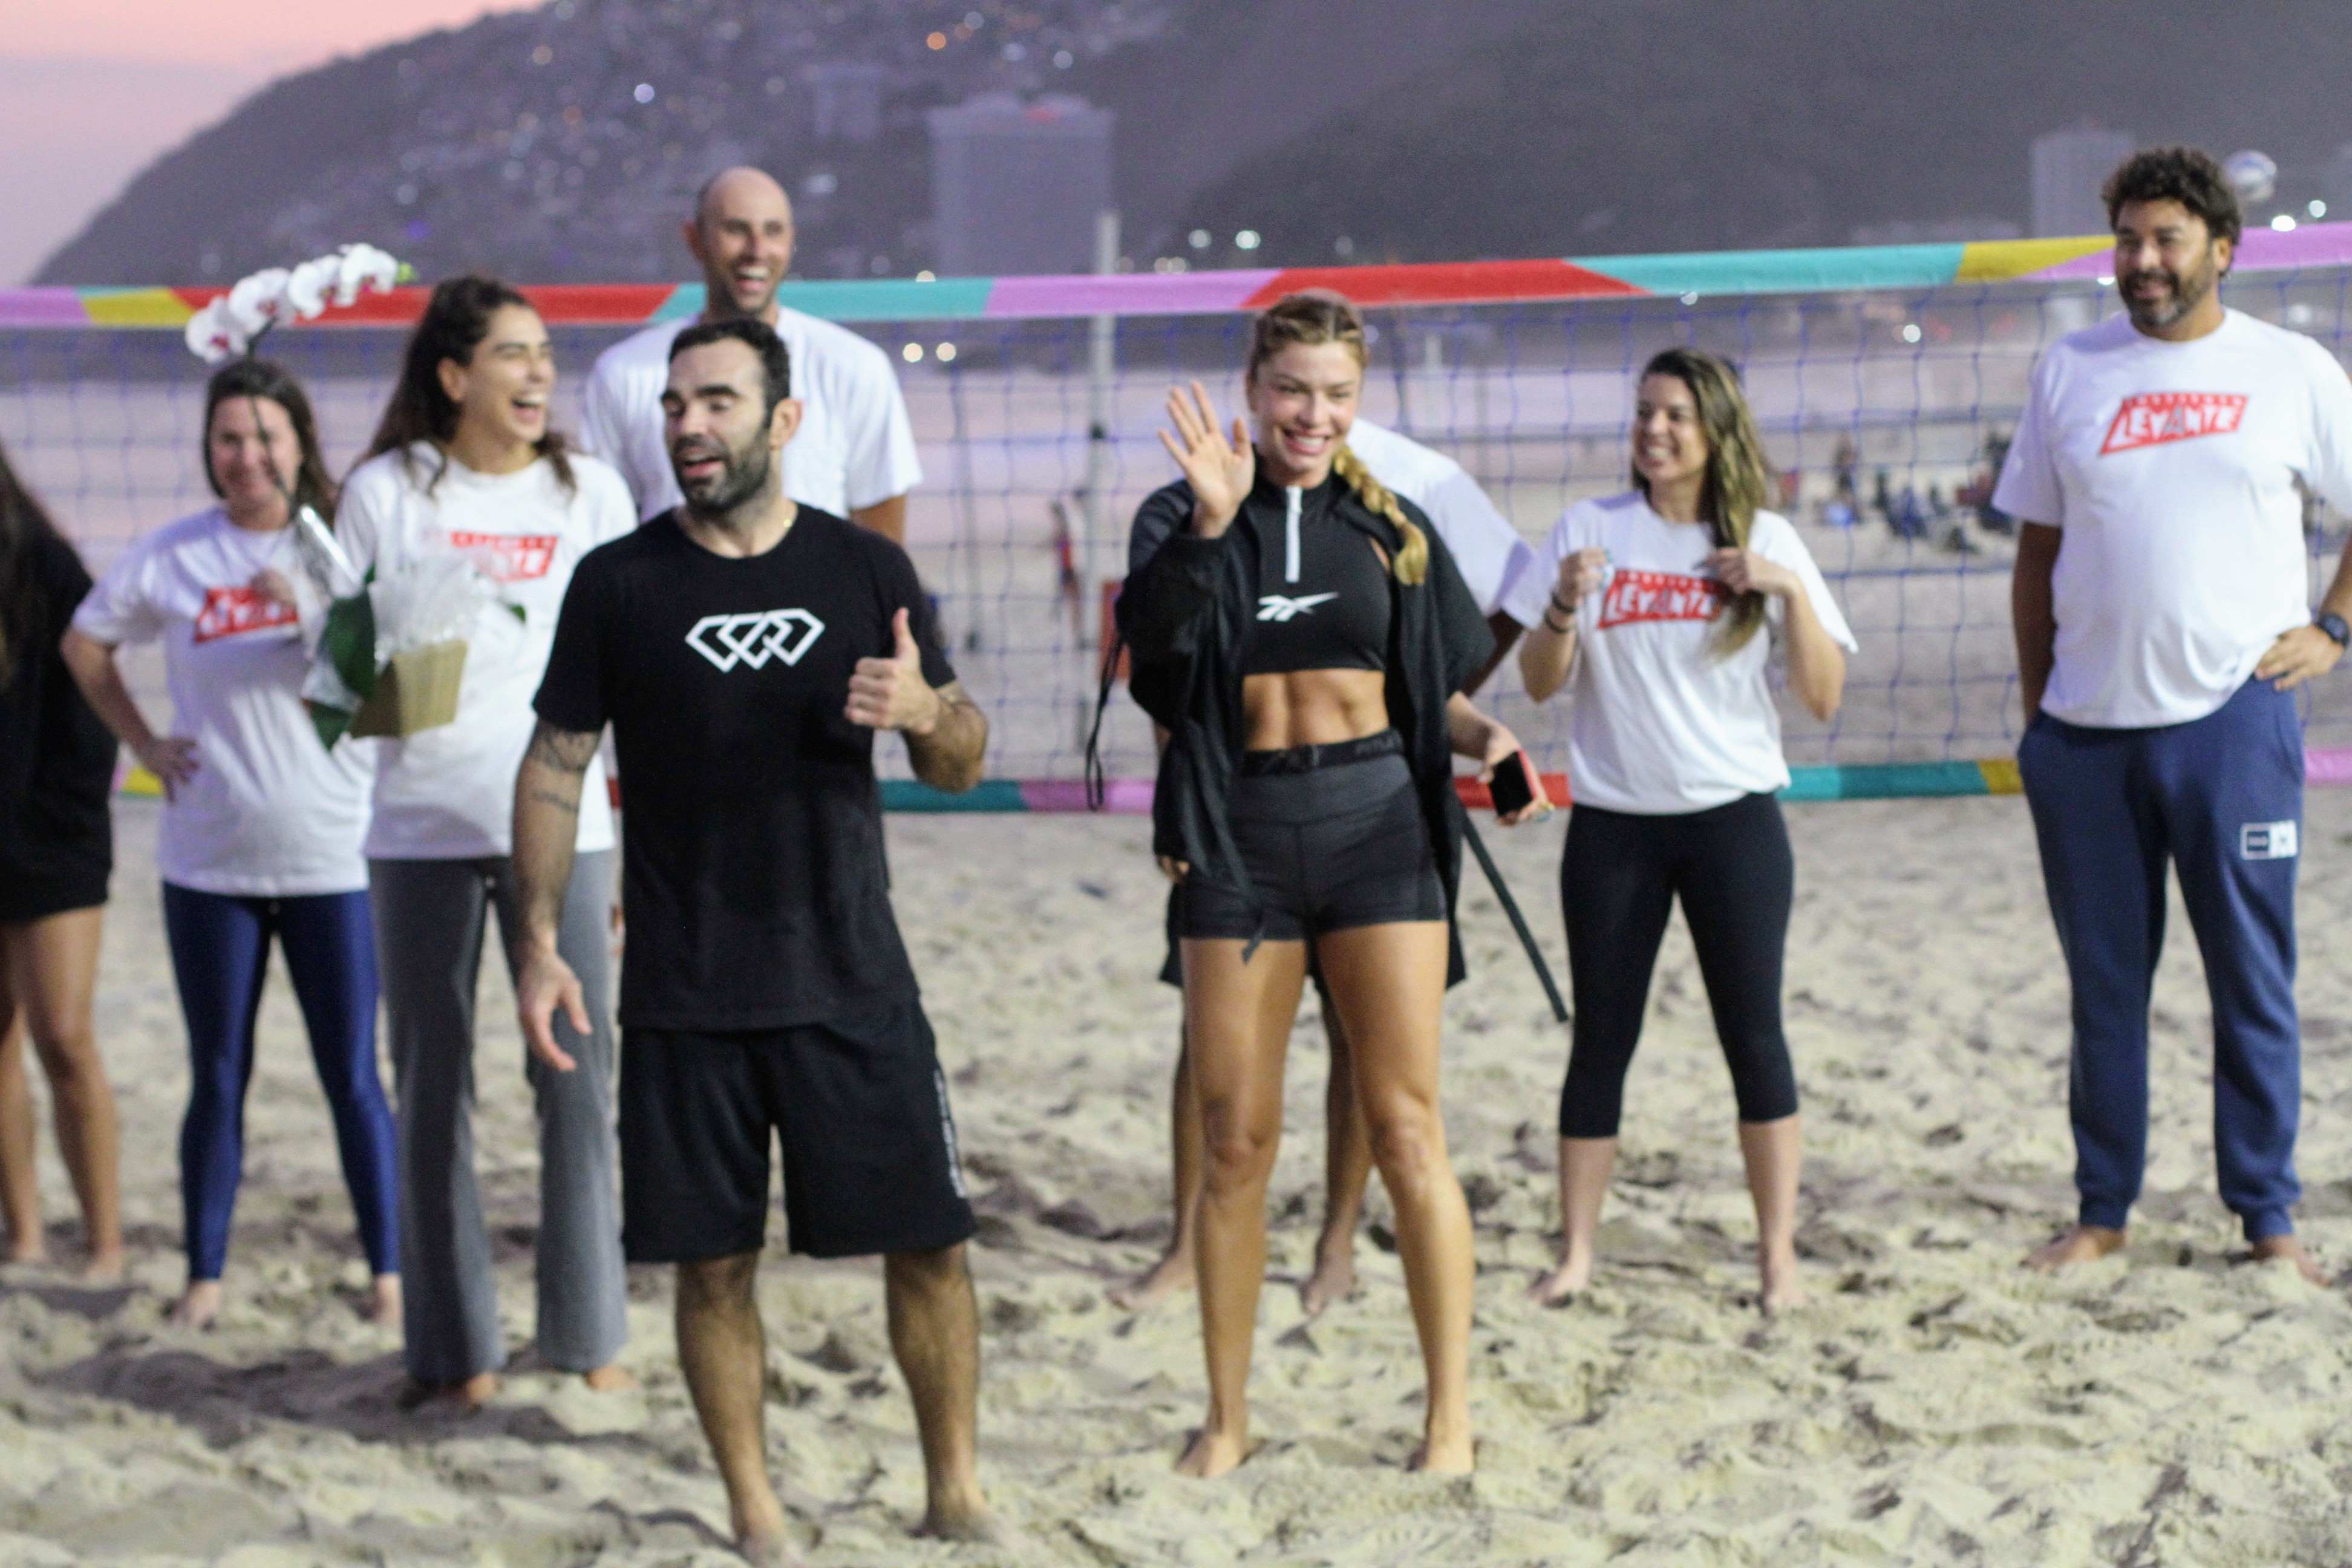 Grazi Massafera é clicada na praia em evento para apoiar causas e rouba a cena ao mostrar boa forma durante partida de vôlei